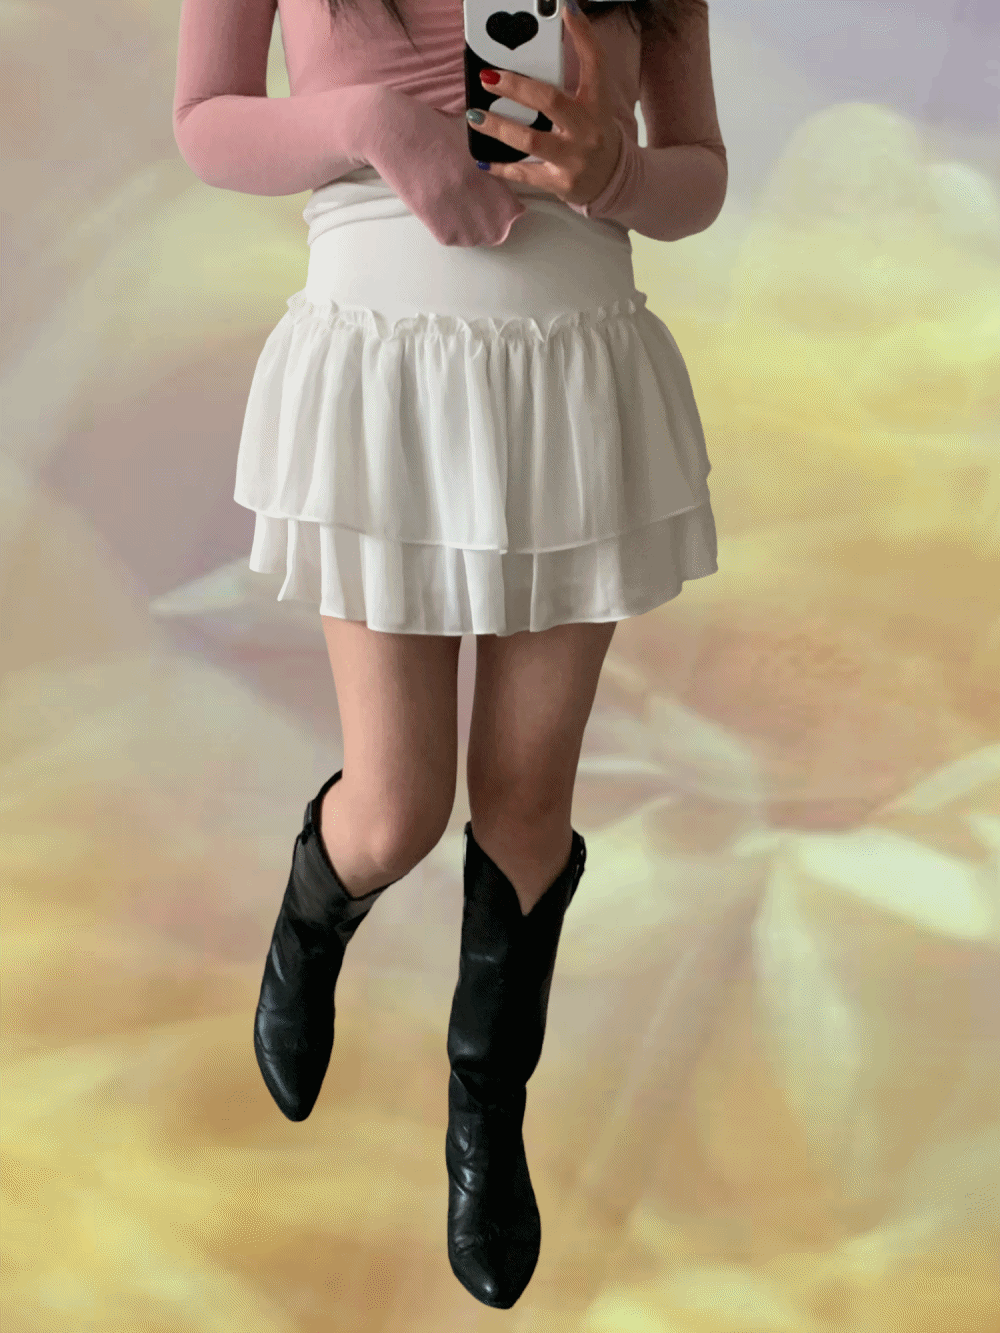 [Skirt] Silky frill mini skirt / 2 colors